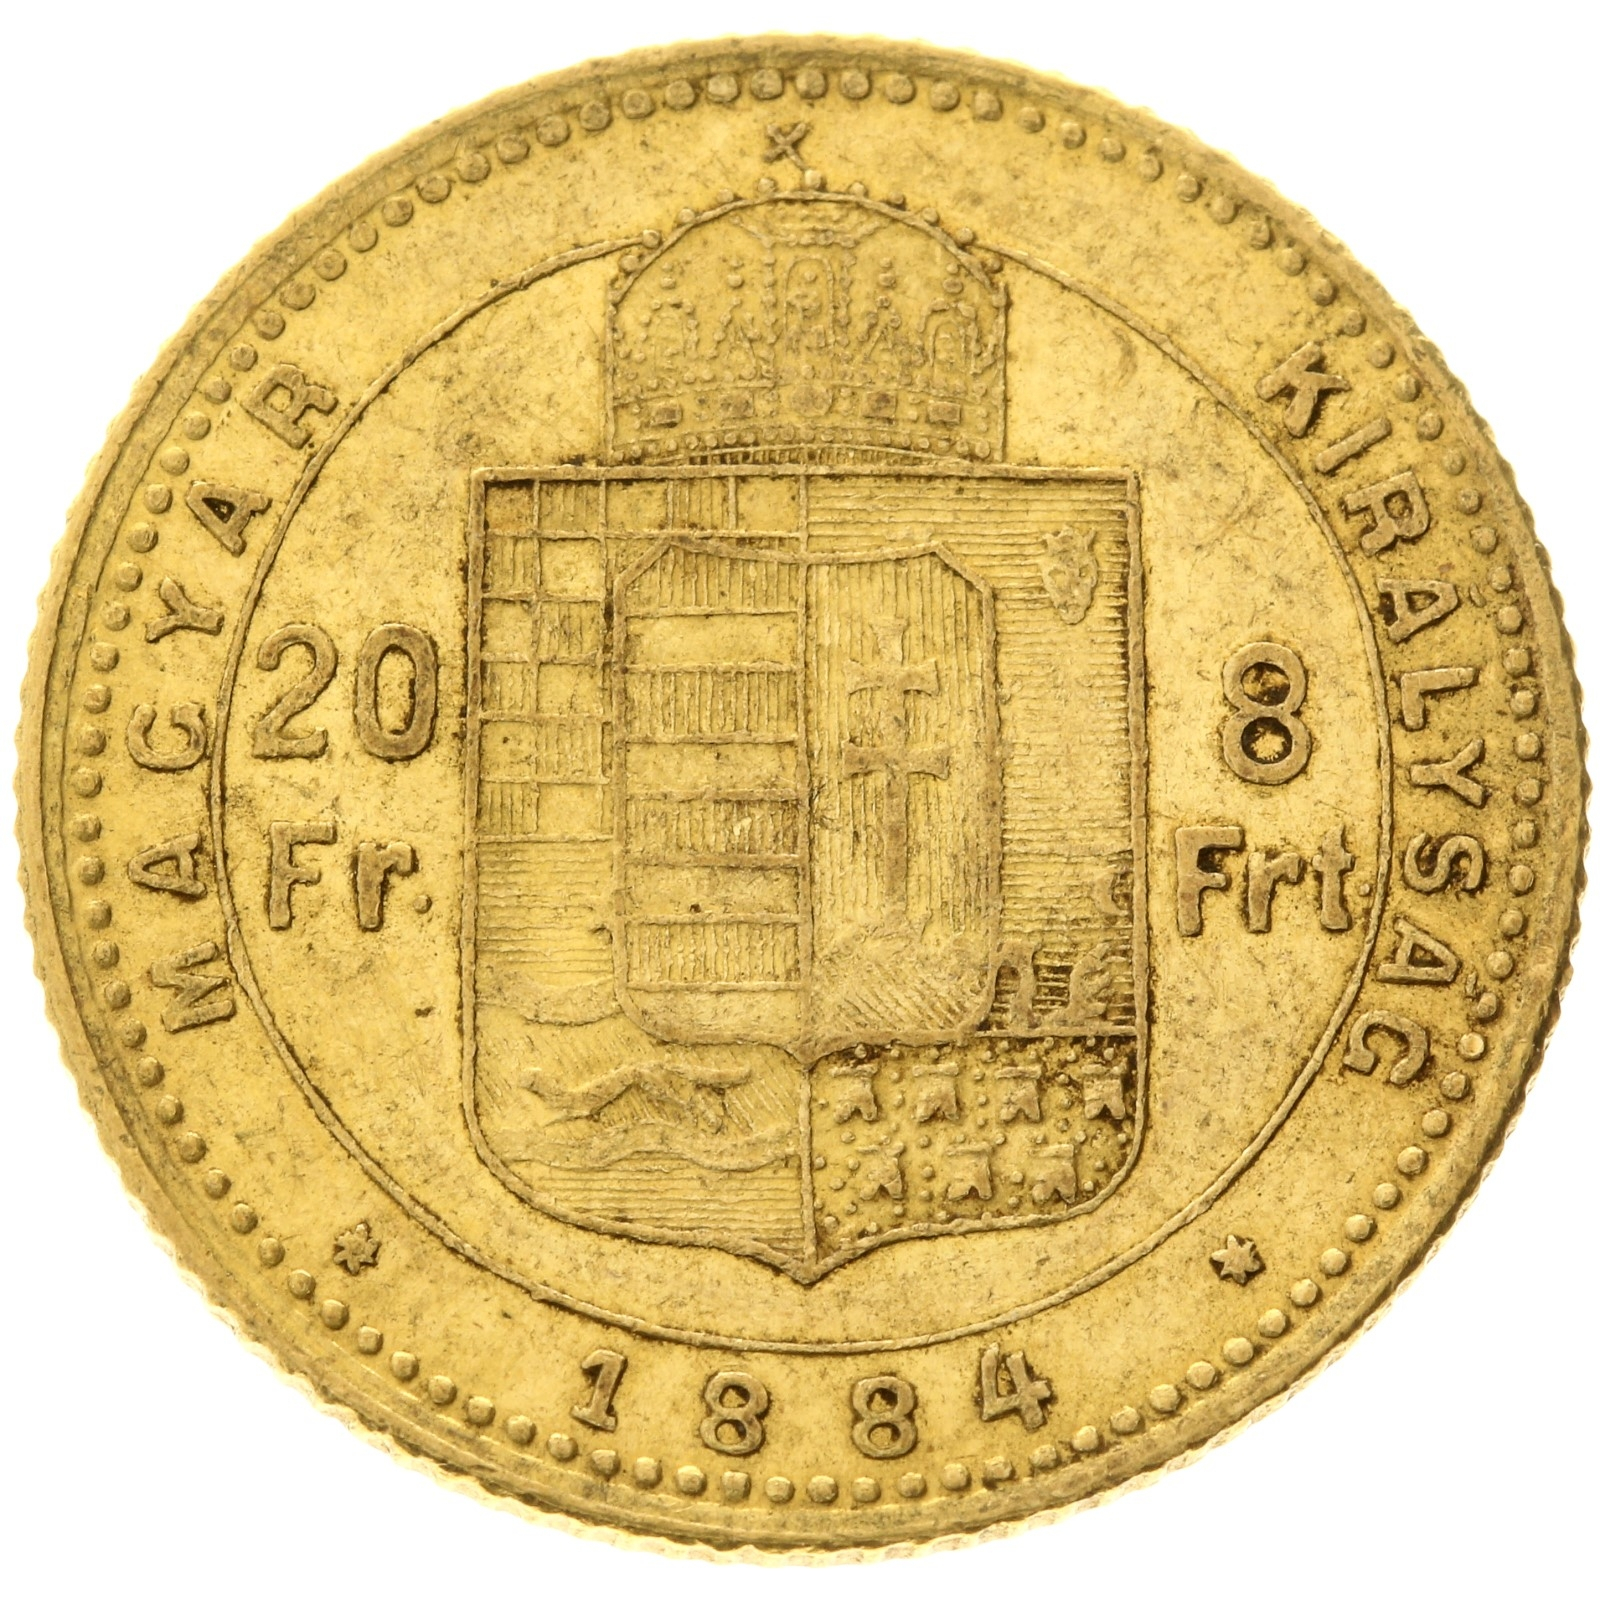 Hungary - 20 Francs / 8 Forint - 1884 - Ferenc József